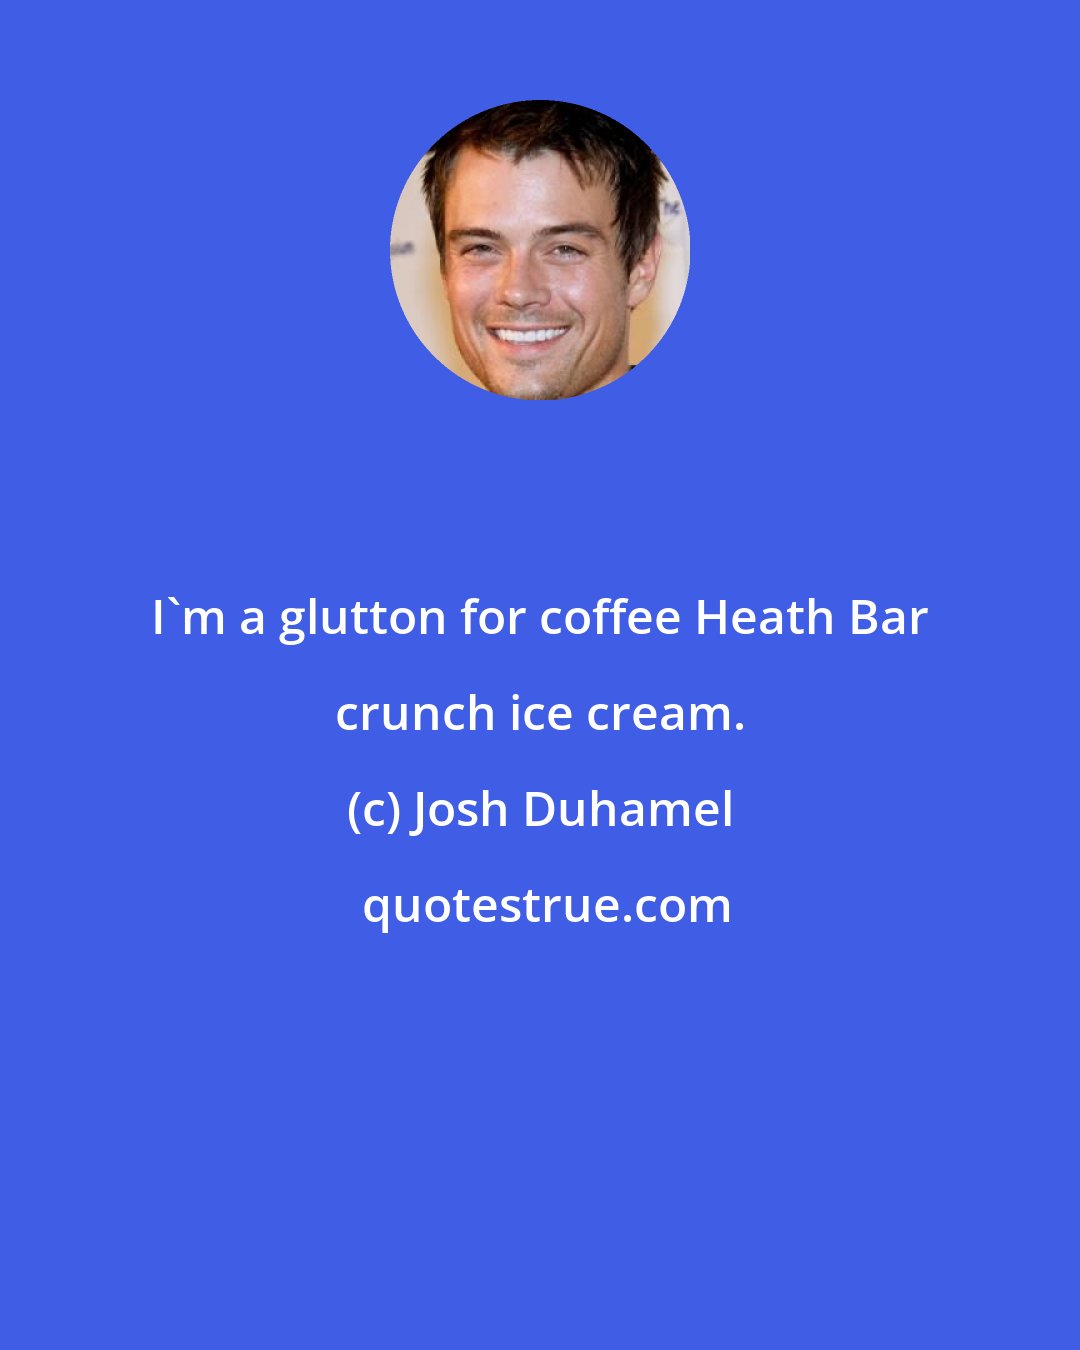 Josh Duhamel: I'm a glutton for coffee Heath Bar crunch ice cream.